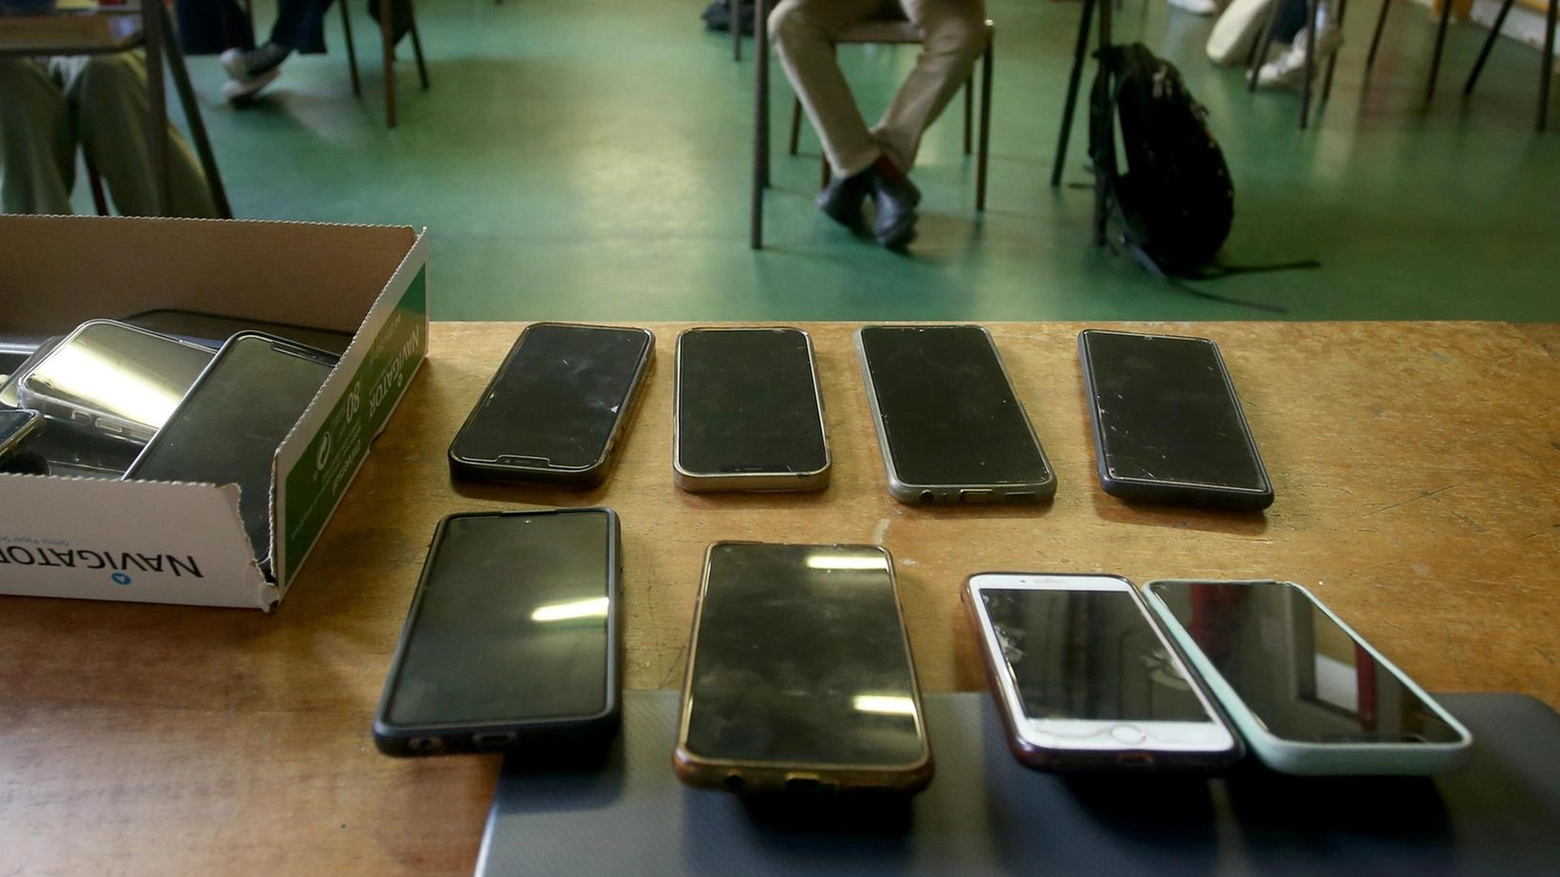 Tablet e telefonini vietati in classe. I presidi: "Educare all’uso corretto"